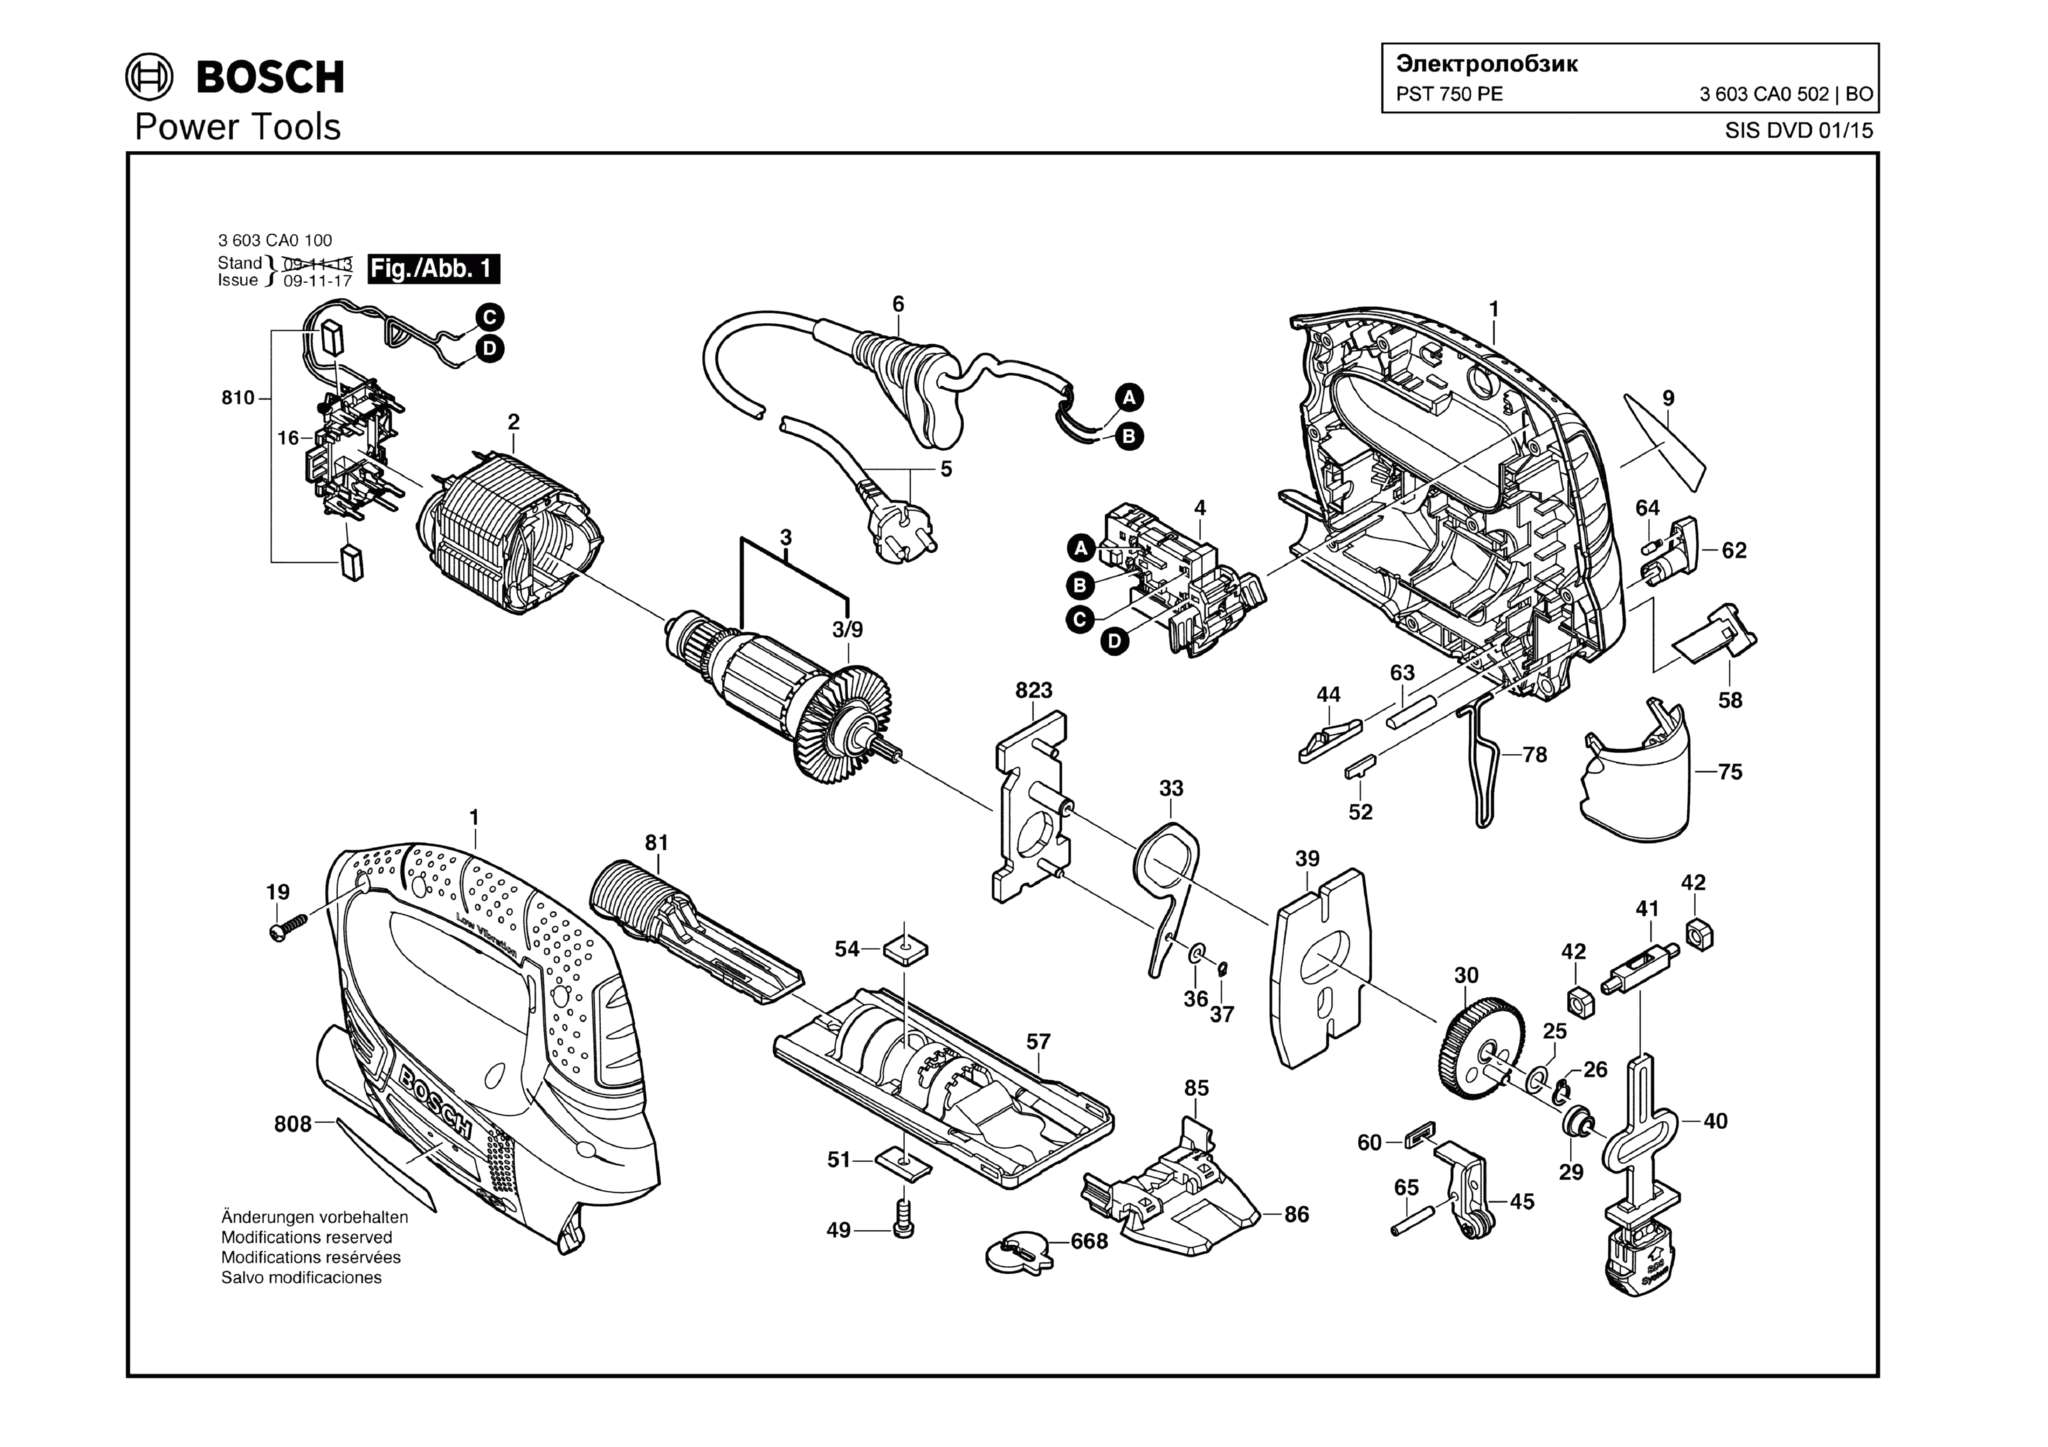 Запчасти, схема и деталировка Bosch PST 750 PE (ТИП 3603CA0502)